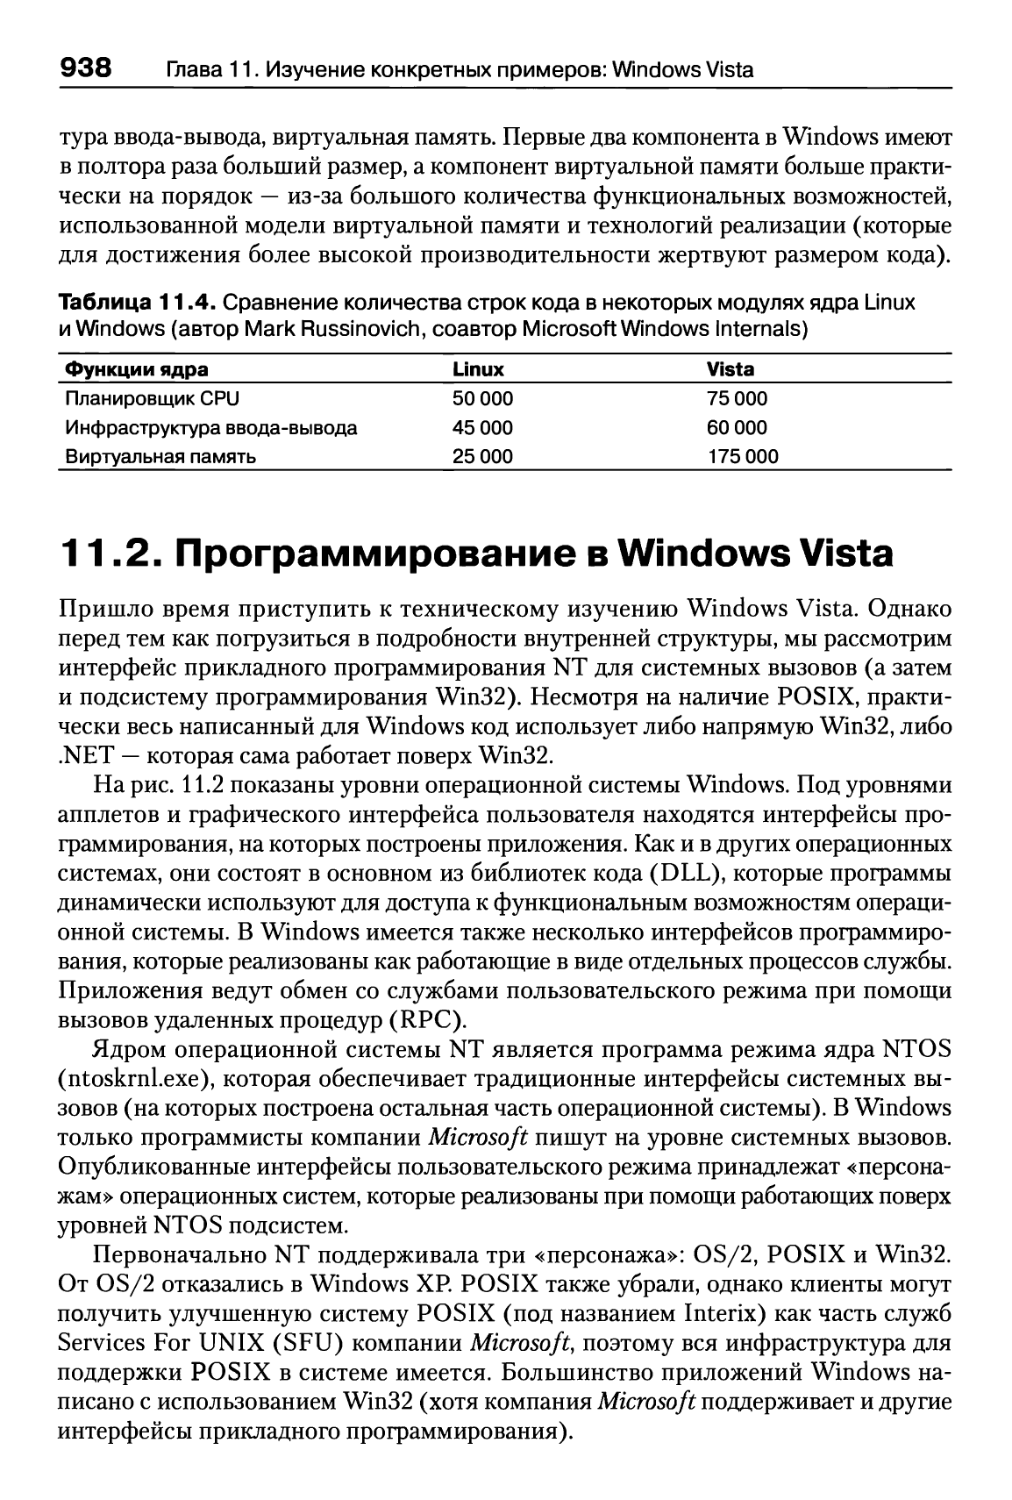 11.2. Программирование в Windows Vista